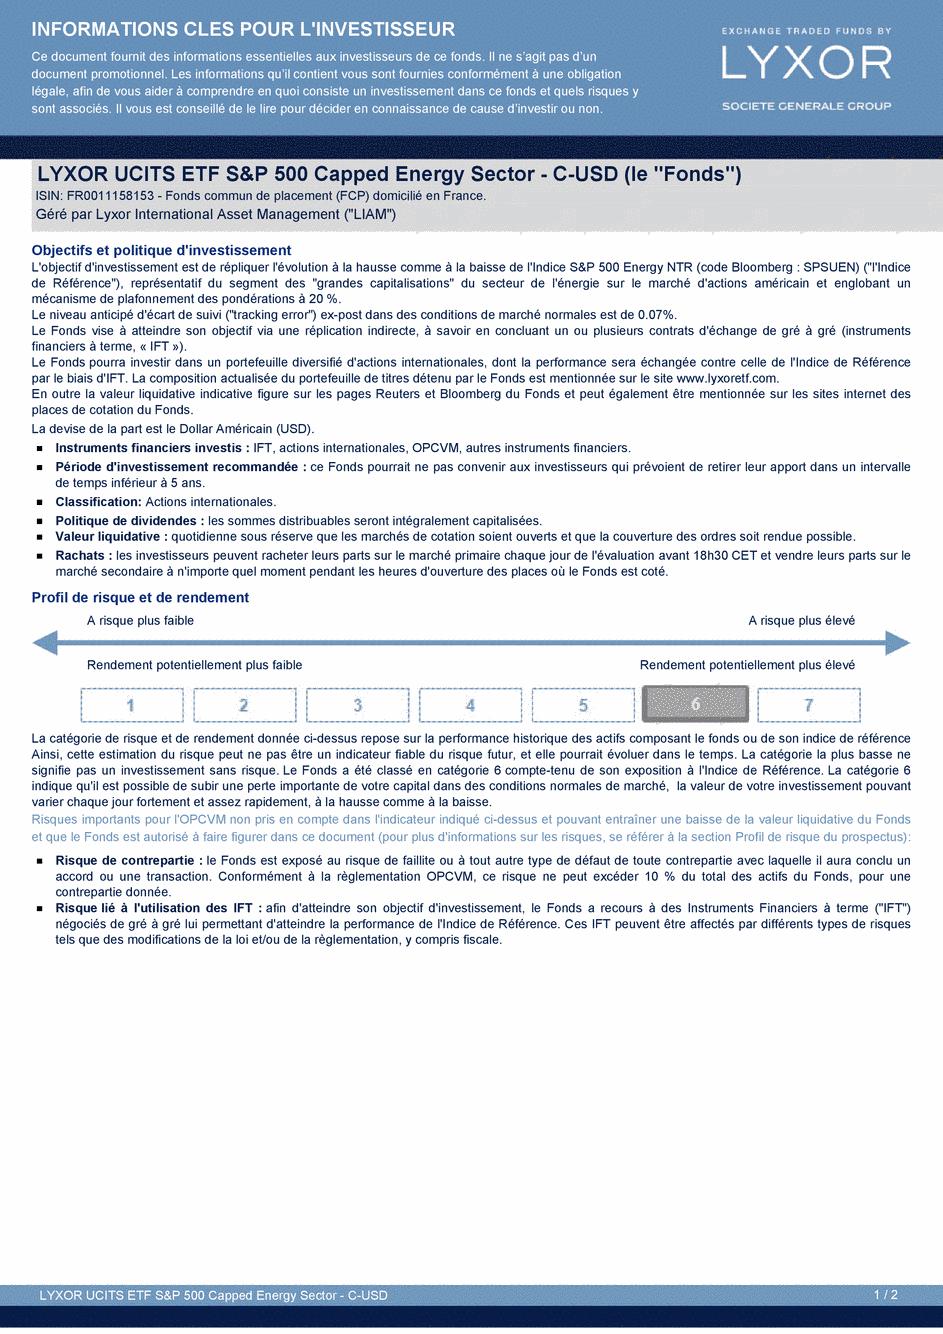 DICI LYXOR UCITS ETF S&P 500 CAPPED ENERGY SECTOR PART C-USD - 11/02/2015 - Français